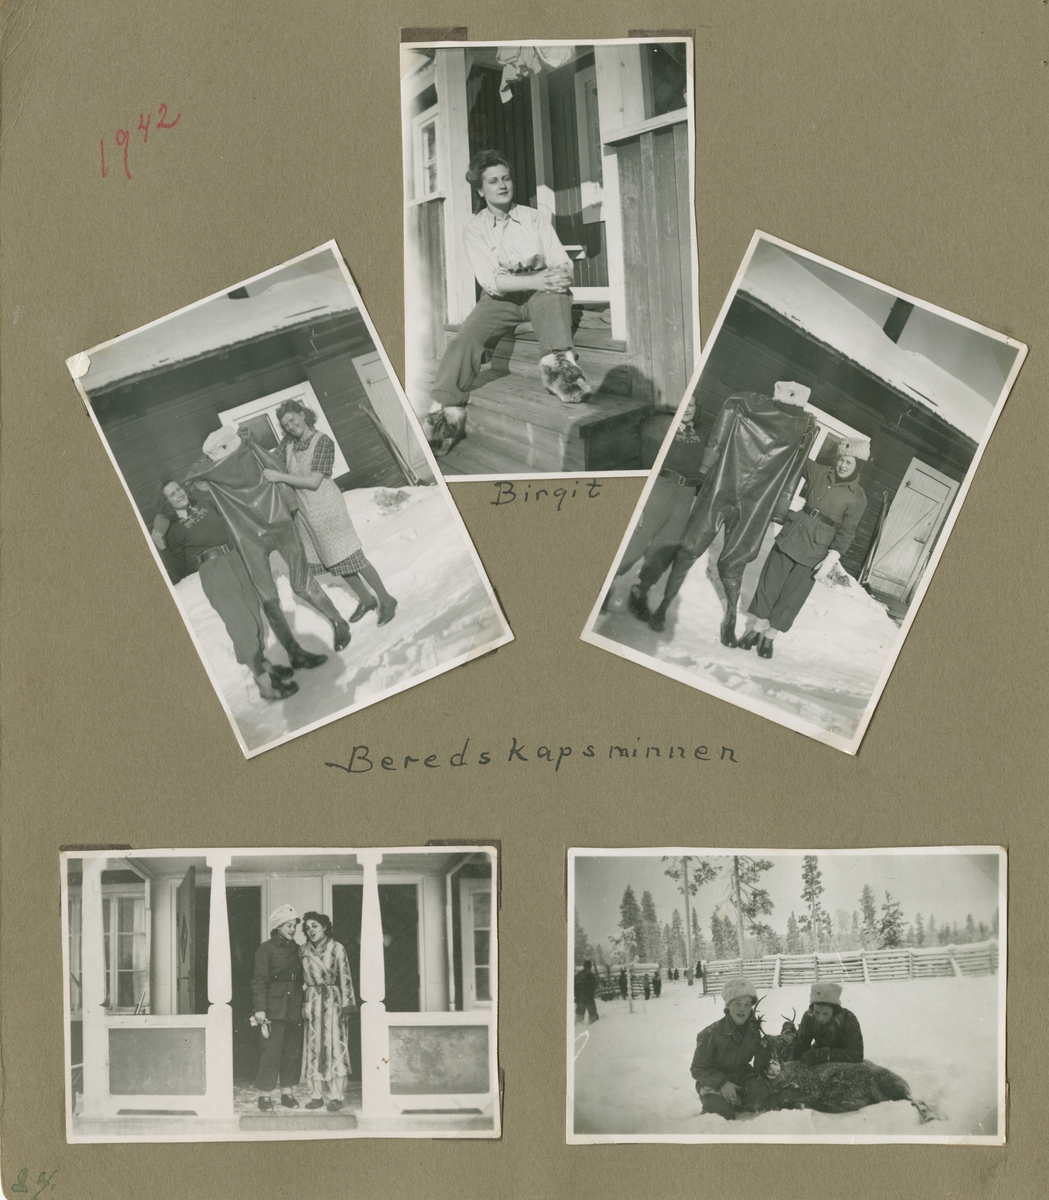 Minnen från luftbevakning i Tellejåkk under beredskapen, 1942. Fotoalbum om fem blad och tio sidor.

Foton av miljöer, förläggning, luftbevakningstorn, personer, luftbevakerskor i uniform, landskap, aktiviteter, renar och samer.